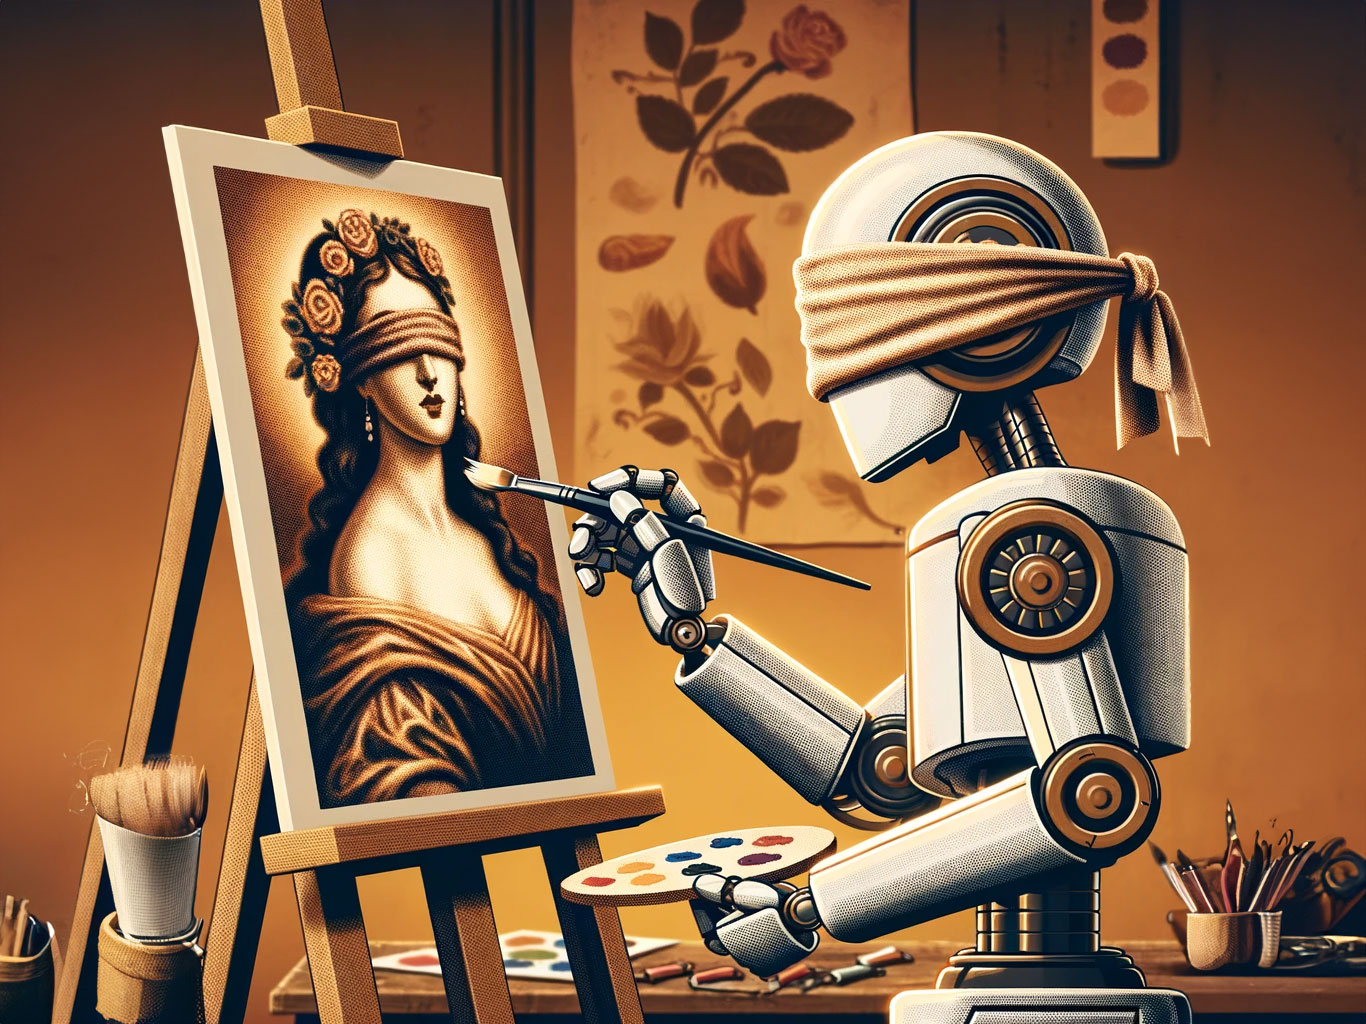 Ein KI-generiertes Bild in warmen Farben. Ein Roboter mit verbundenen Augen steht vor einer Staffelei und malt mit einem Pinsel das Bild einer Frau, die ebenfalls eine Augenbinde trägt.